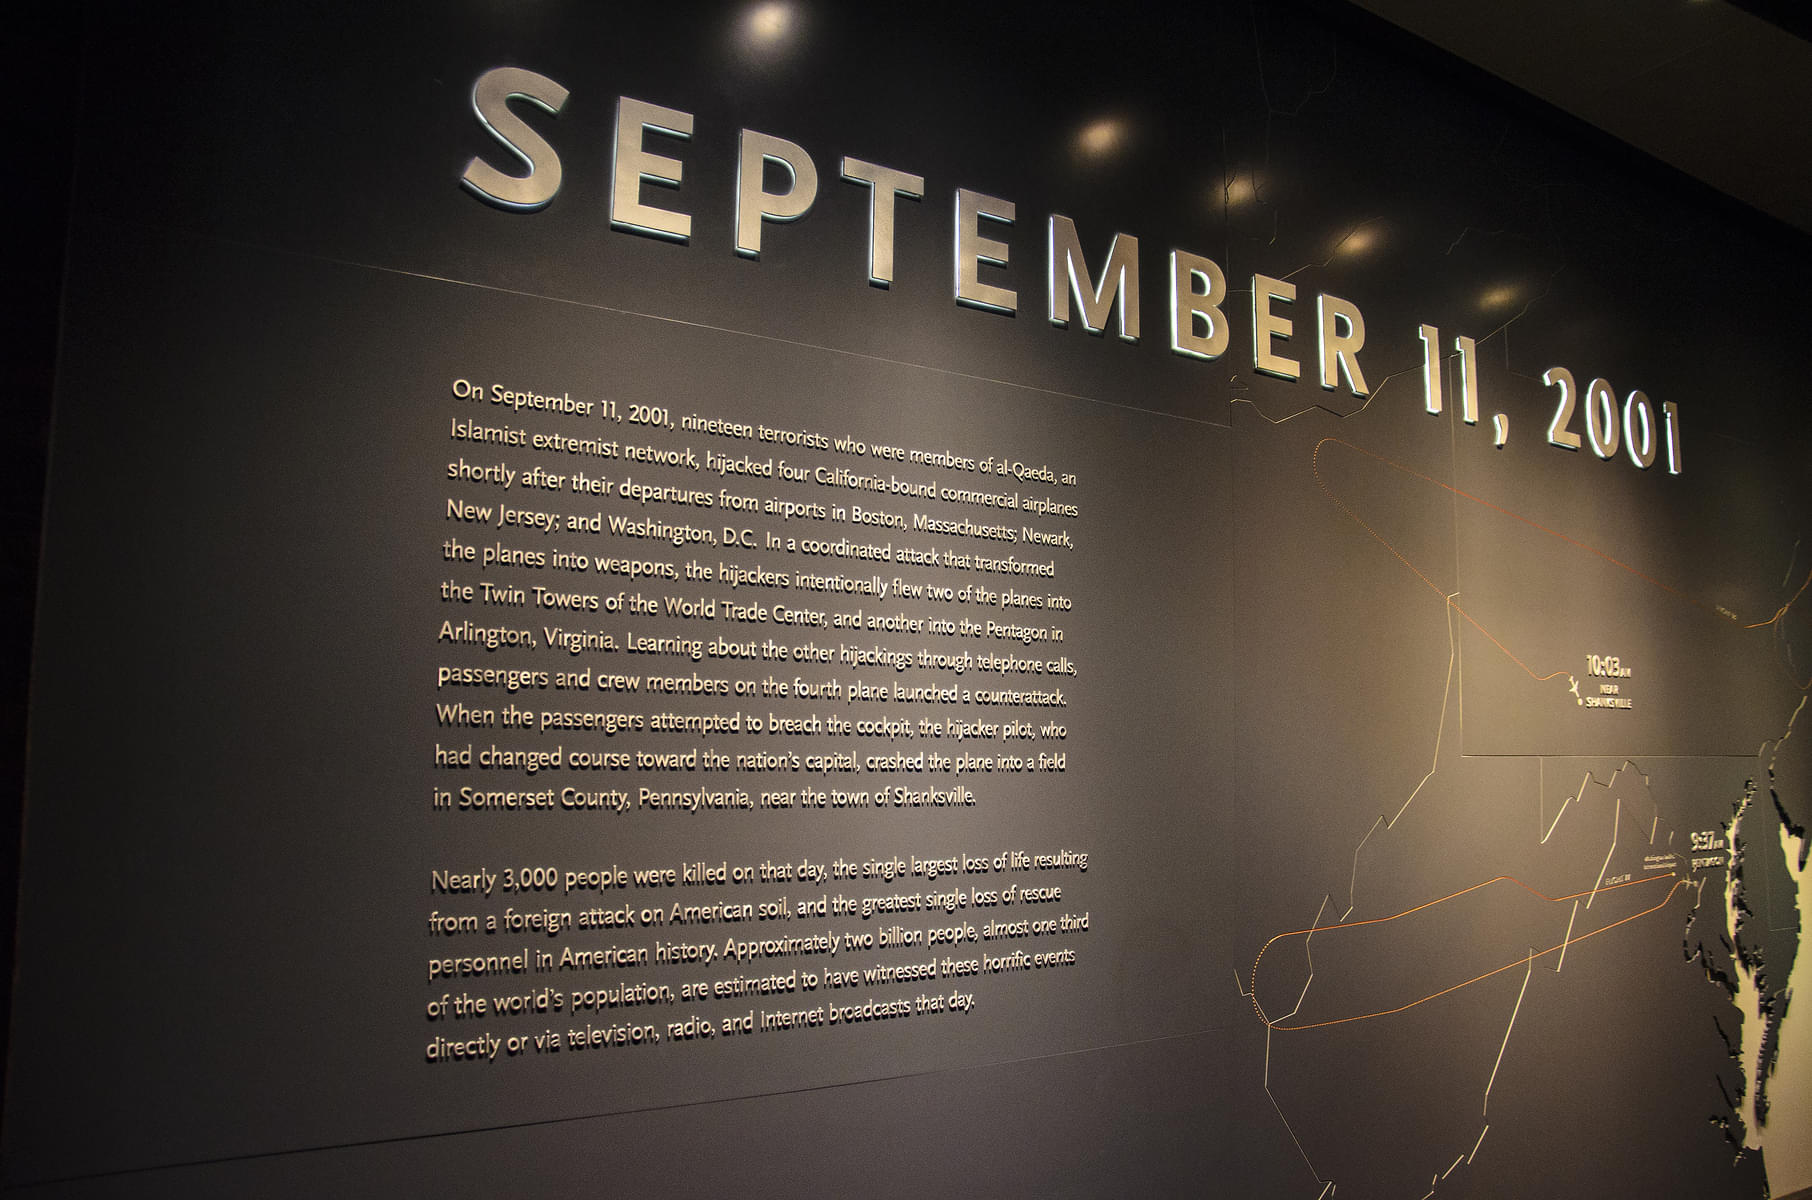 Why Visit the 9/11 Memorial Museum?